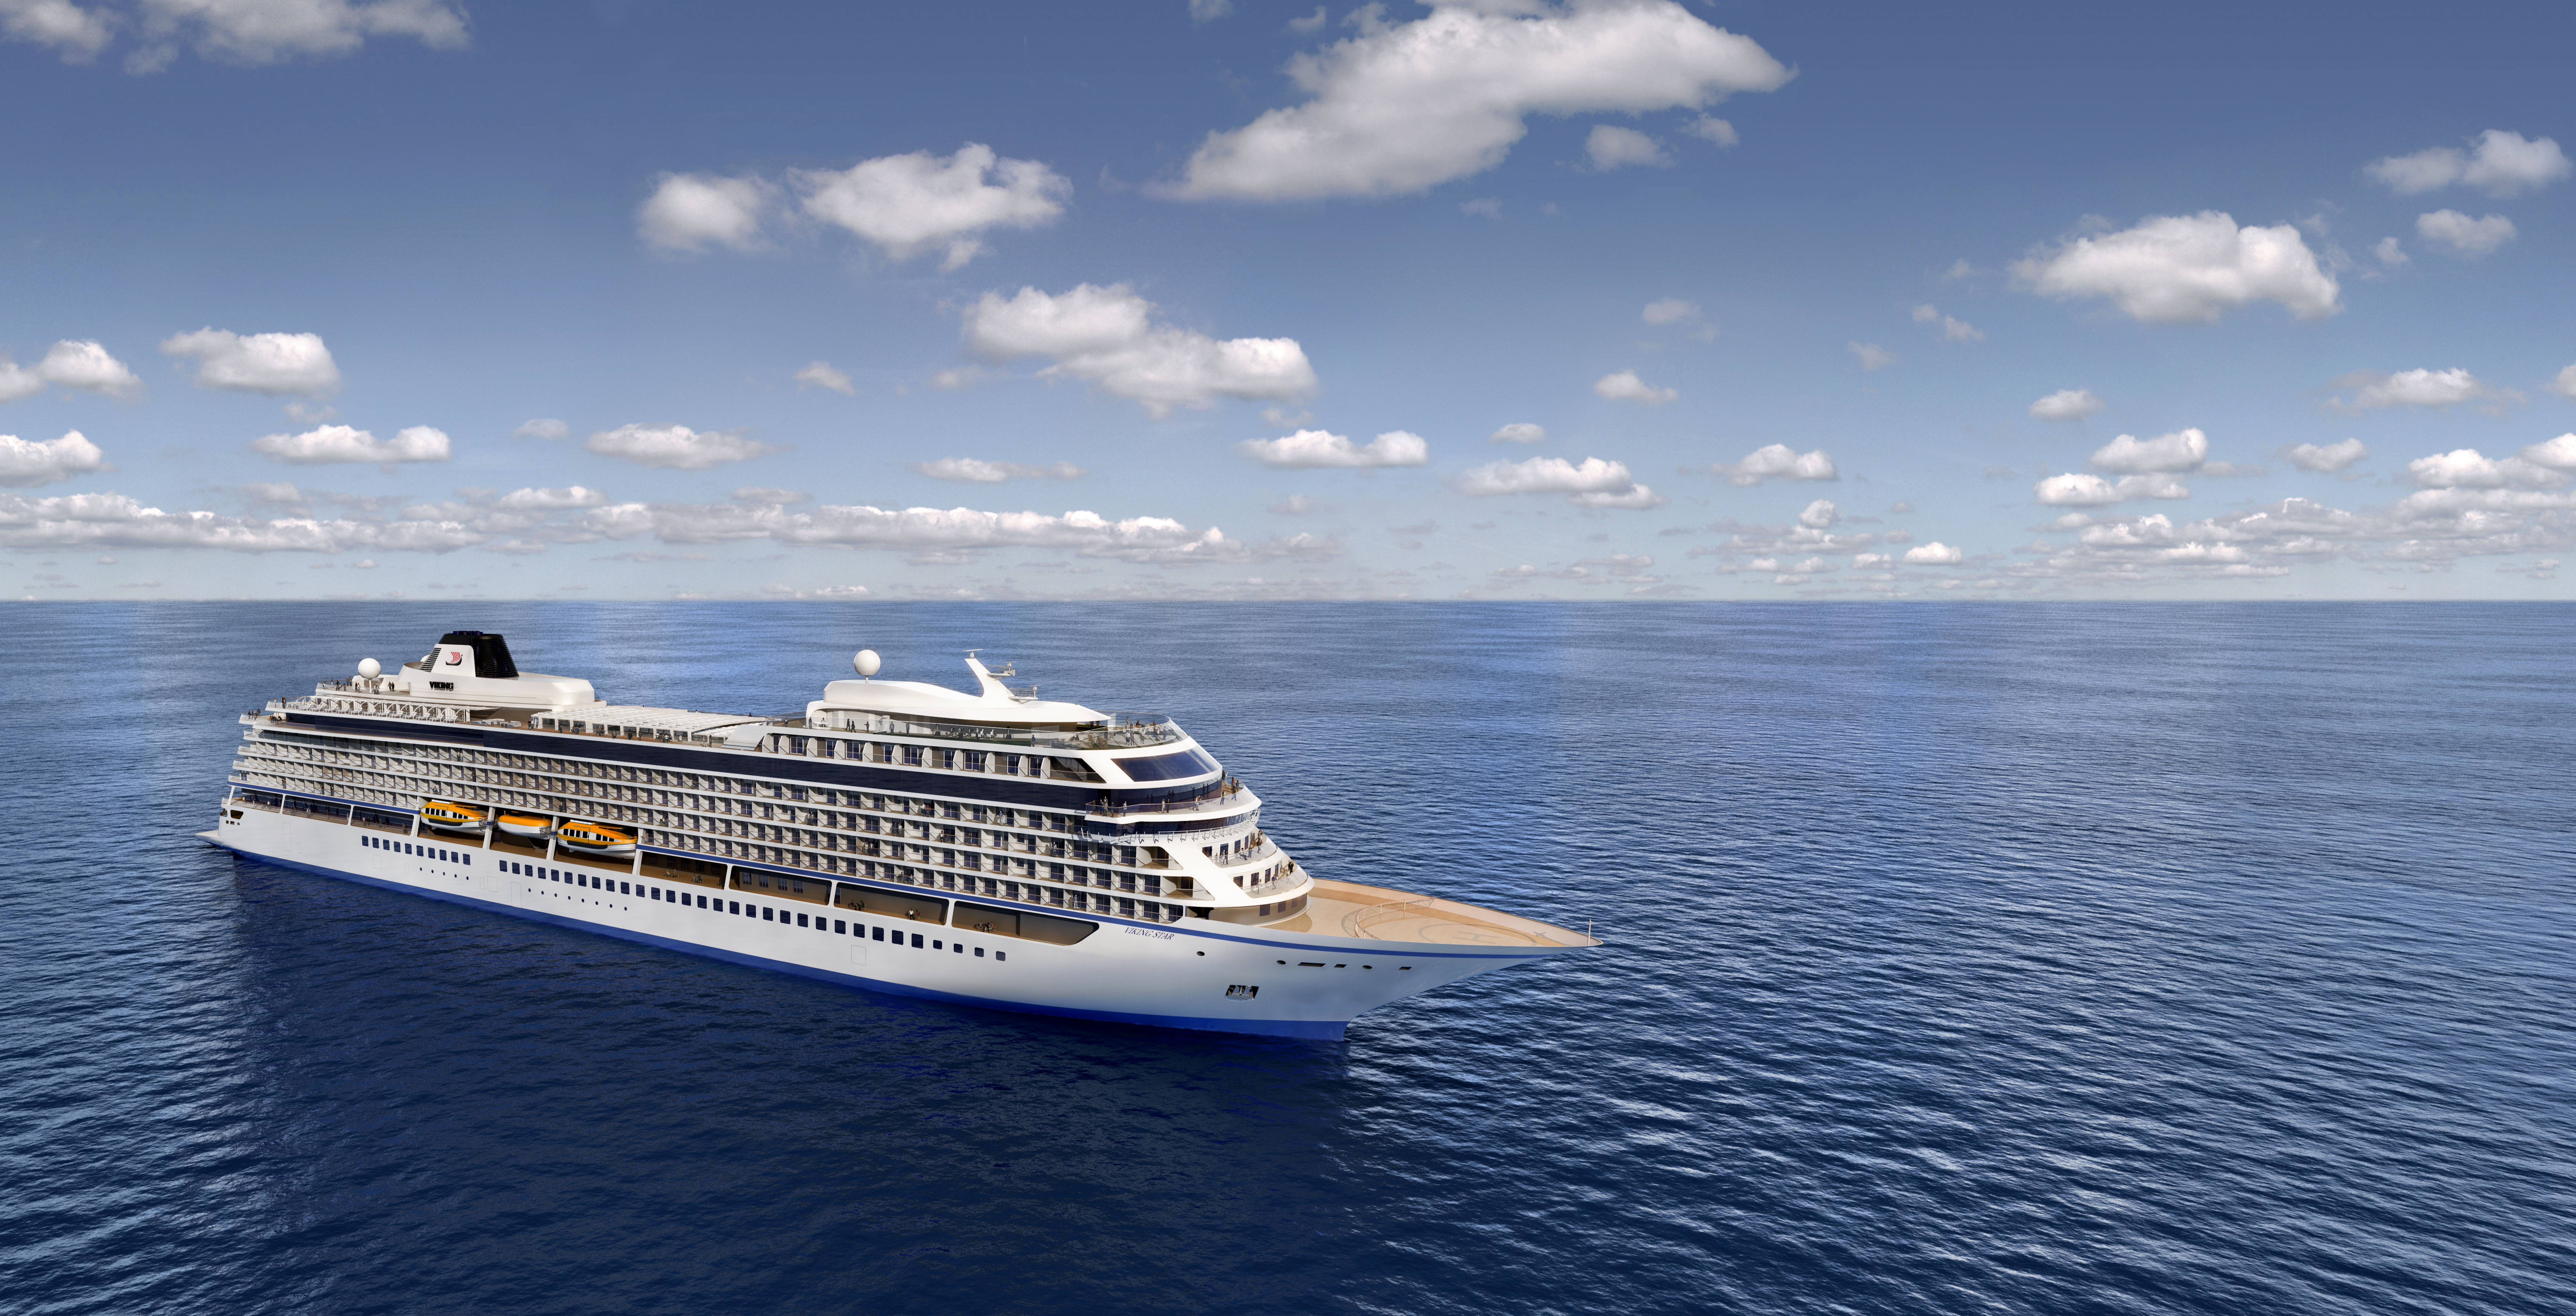 Αποτέλεσμα εικόνας για Viking Sea Cruise marks its opening visit to Bermuda